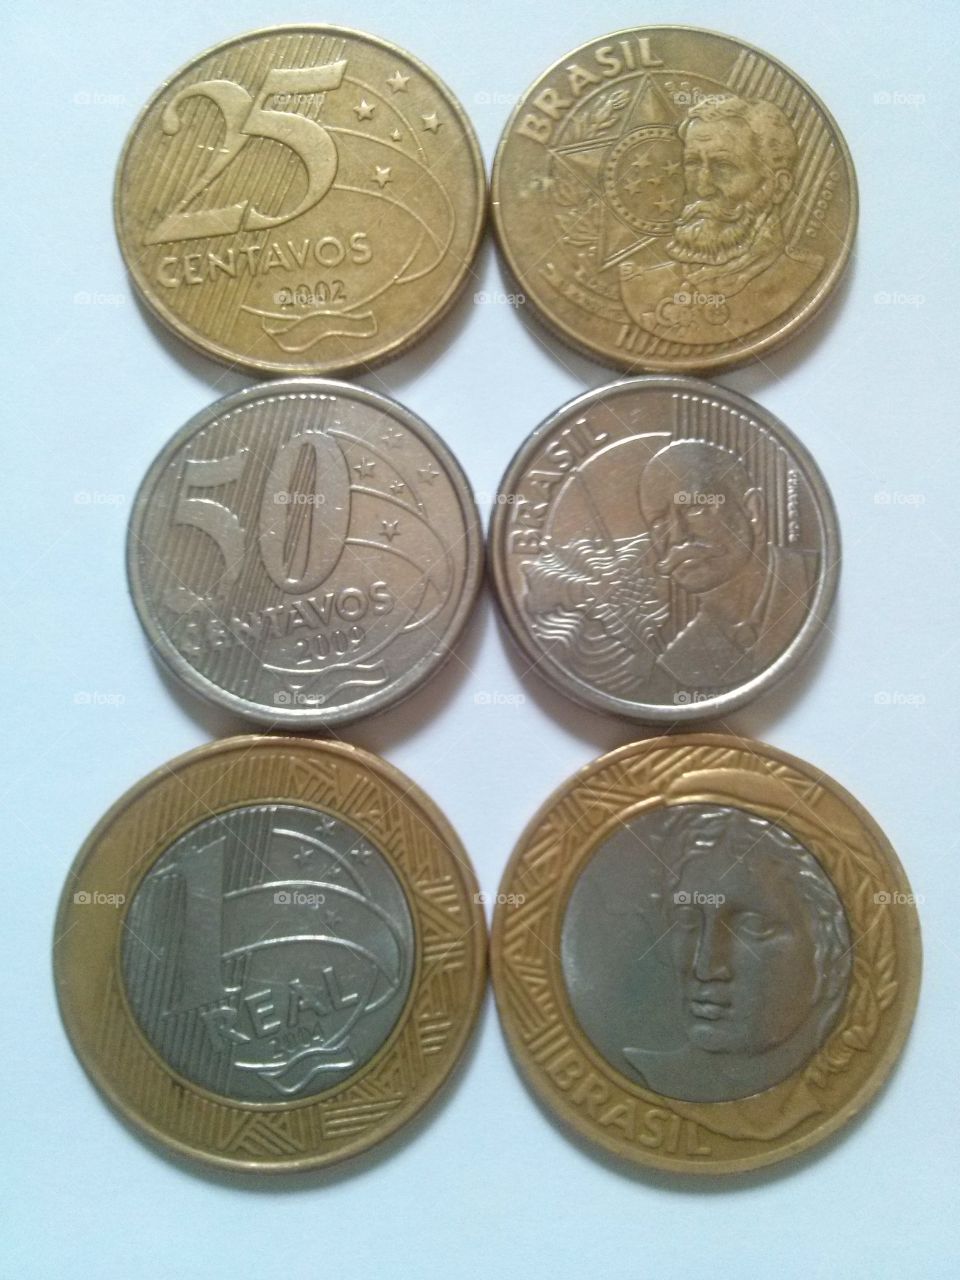 Brasilian coin money